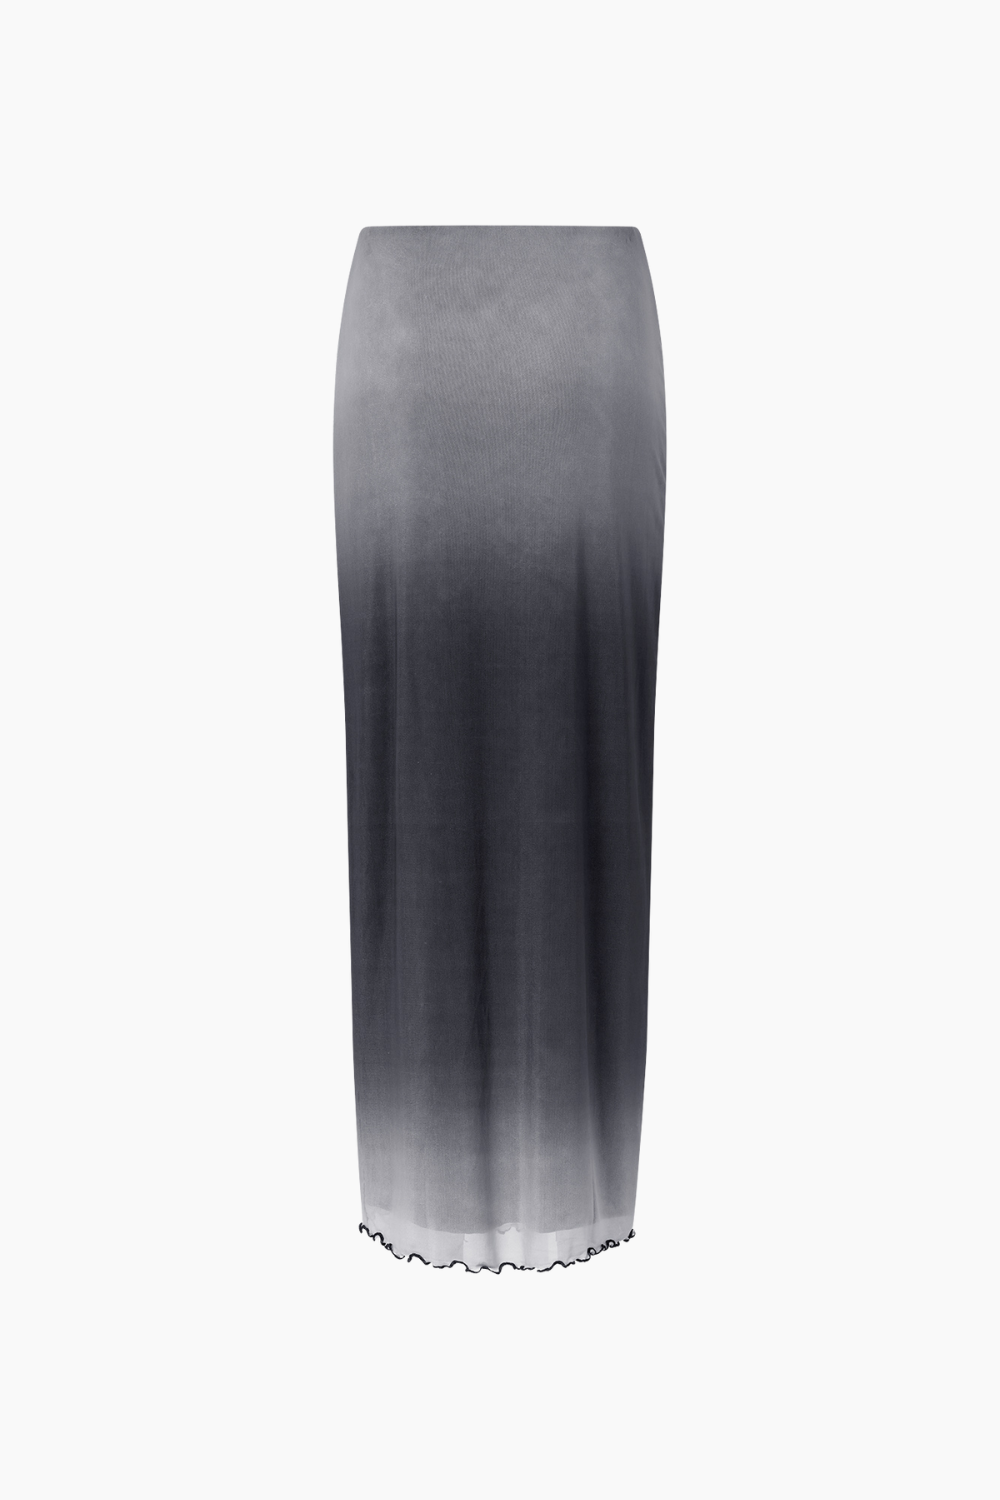 Enmob Skirt 7042 - Grey Fade - Envii